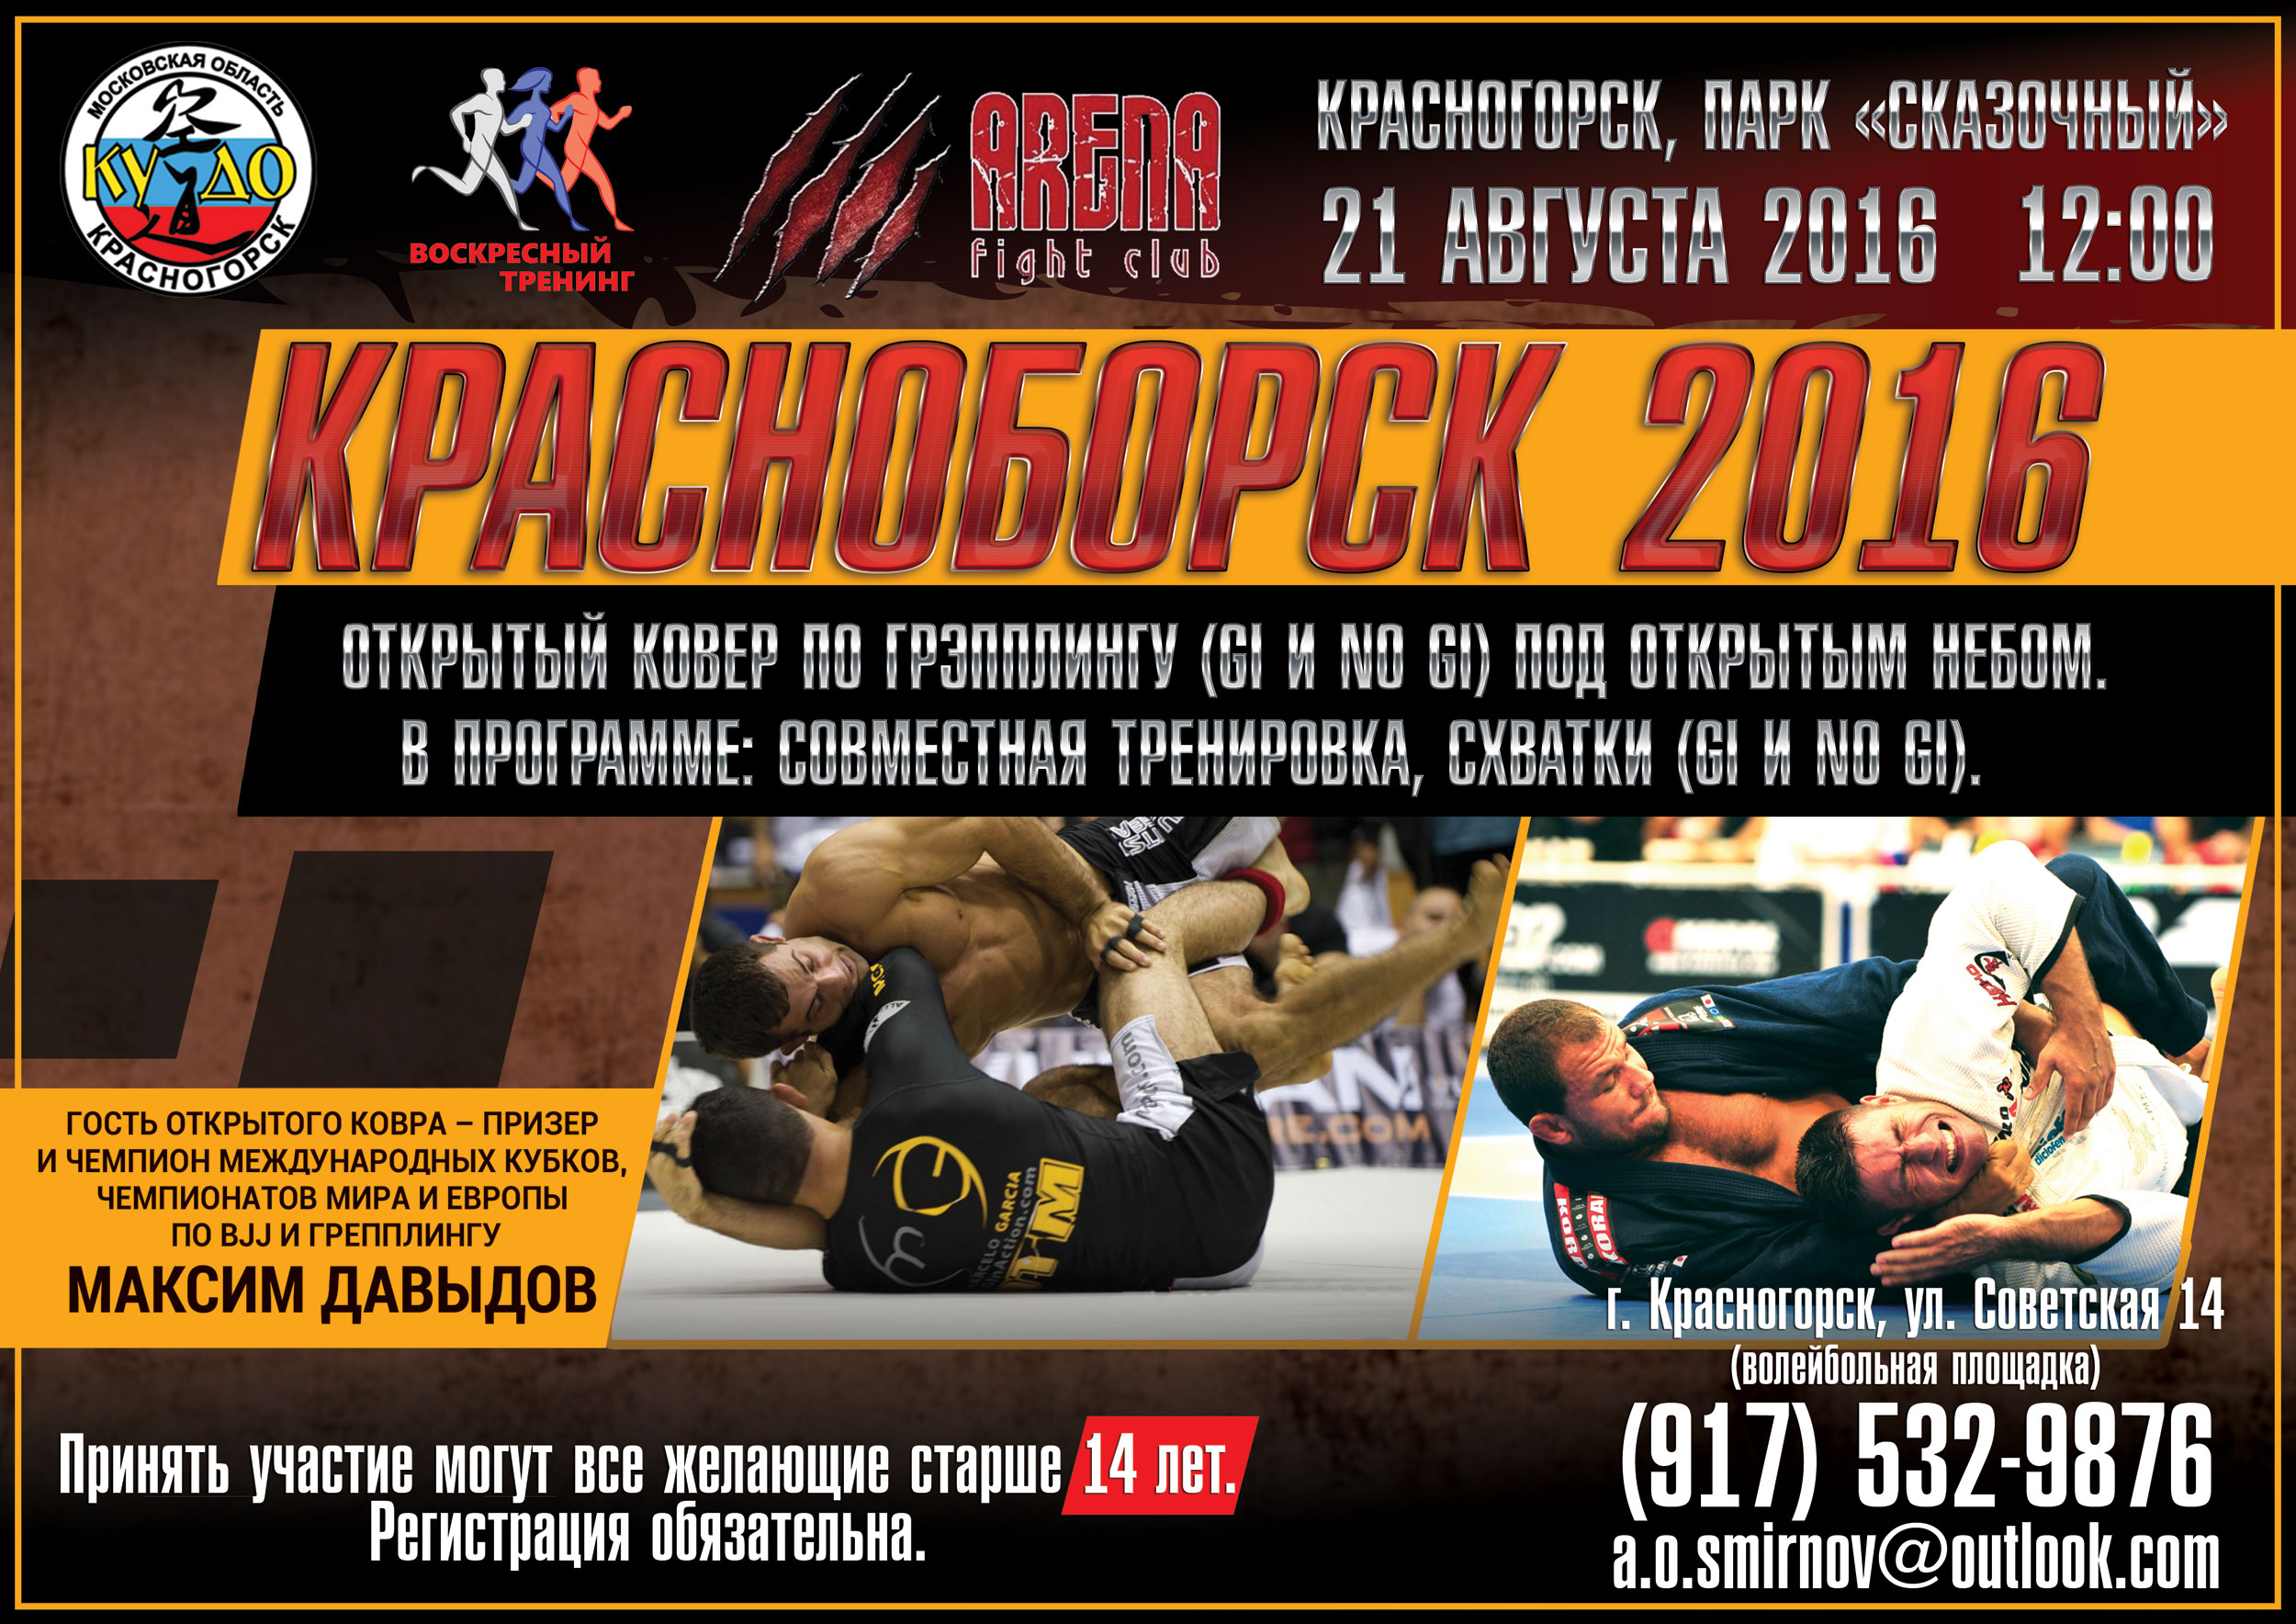 Открытые соревнования по борьбе - "КрасноБорск 2016" пройдут в Красногорске